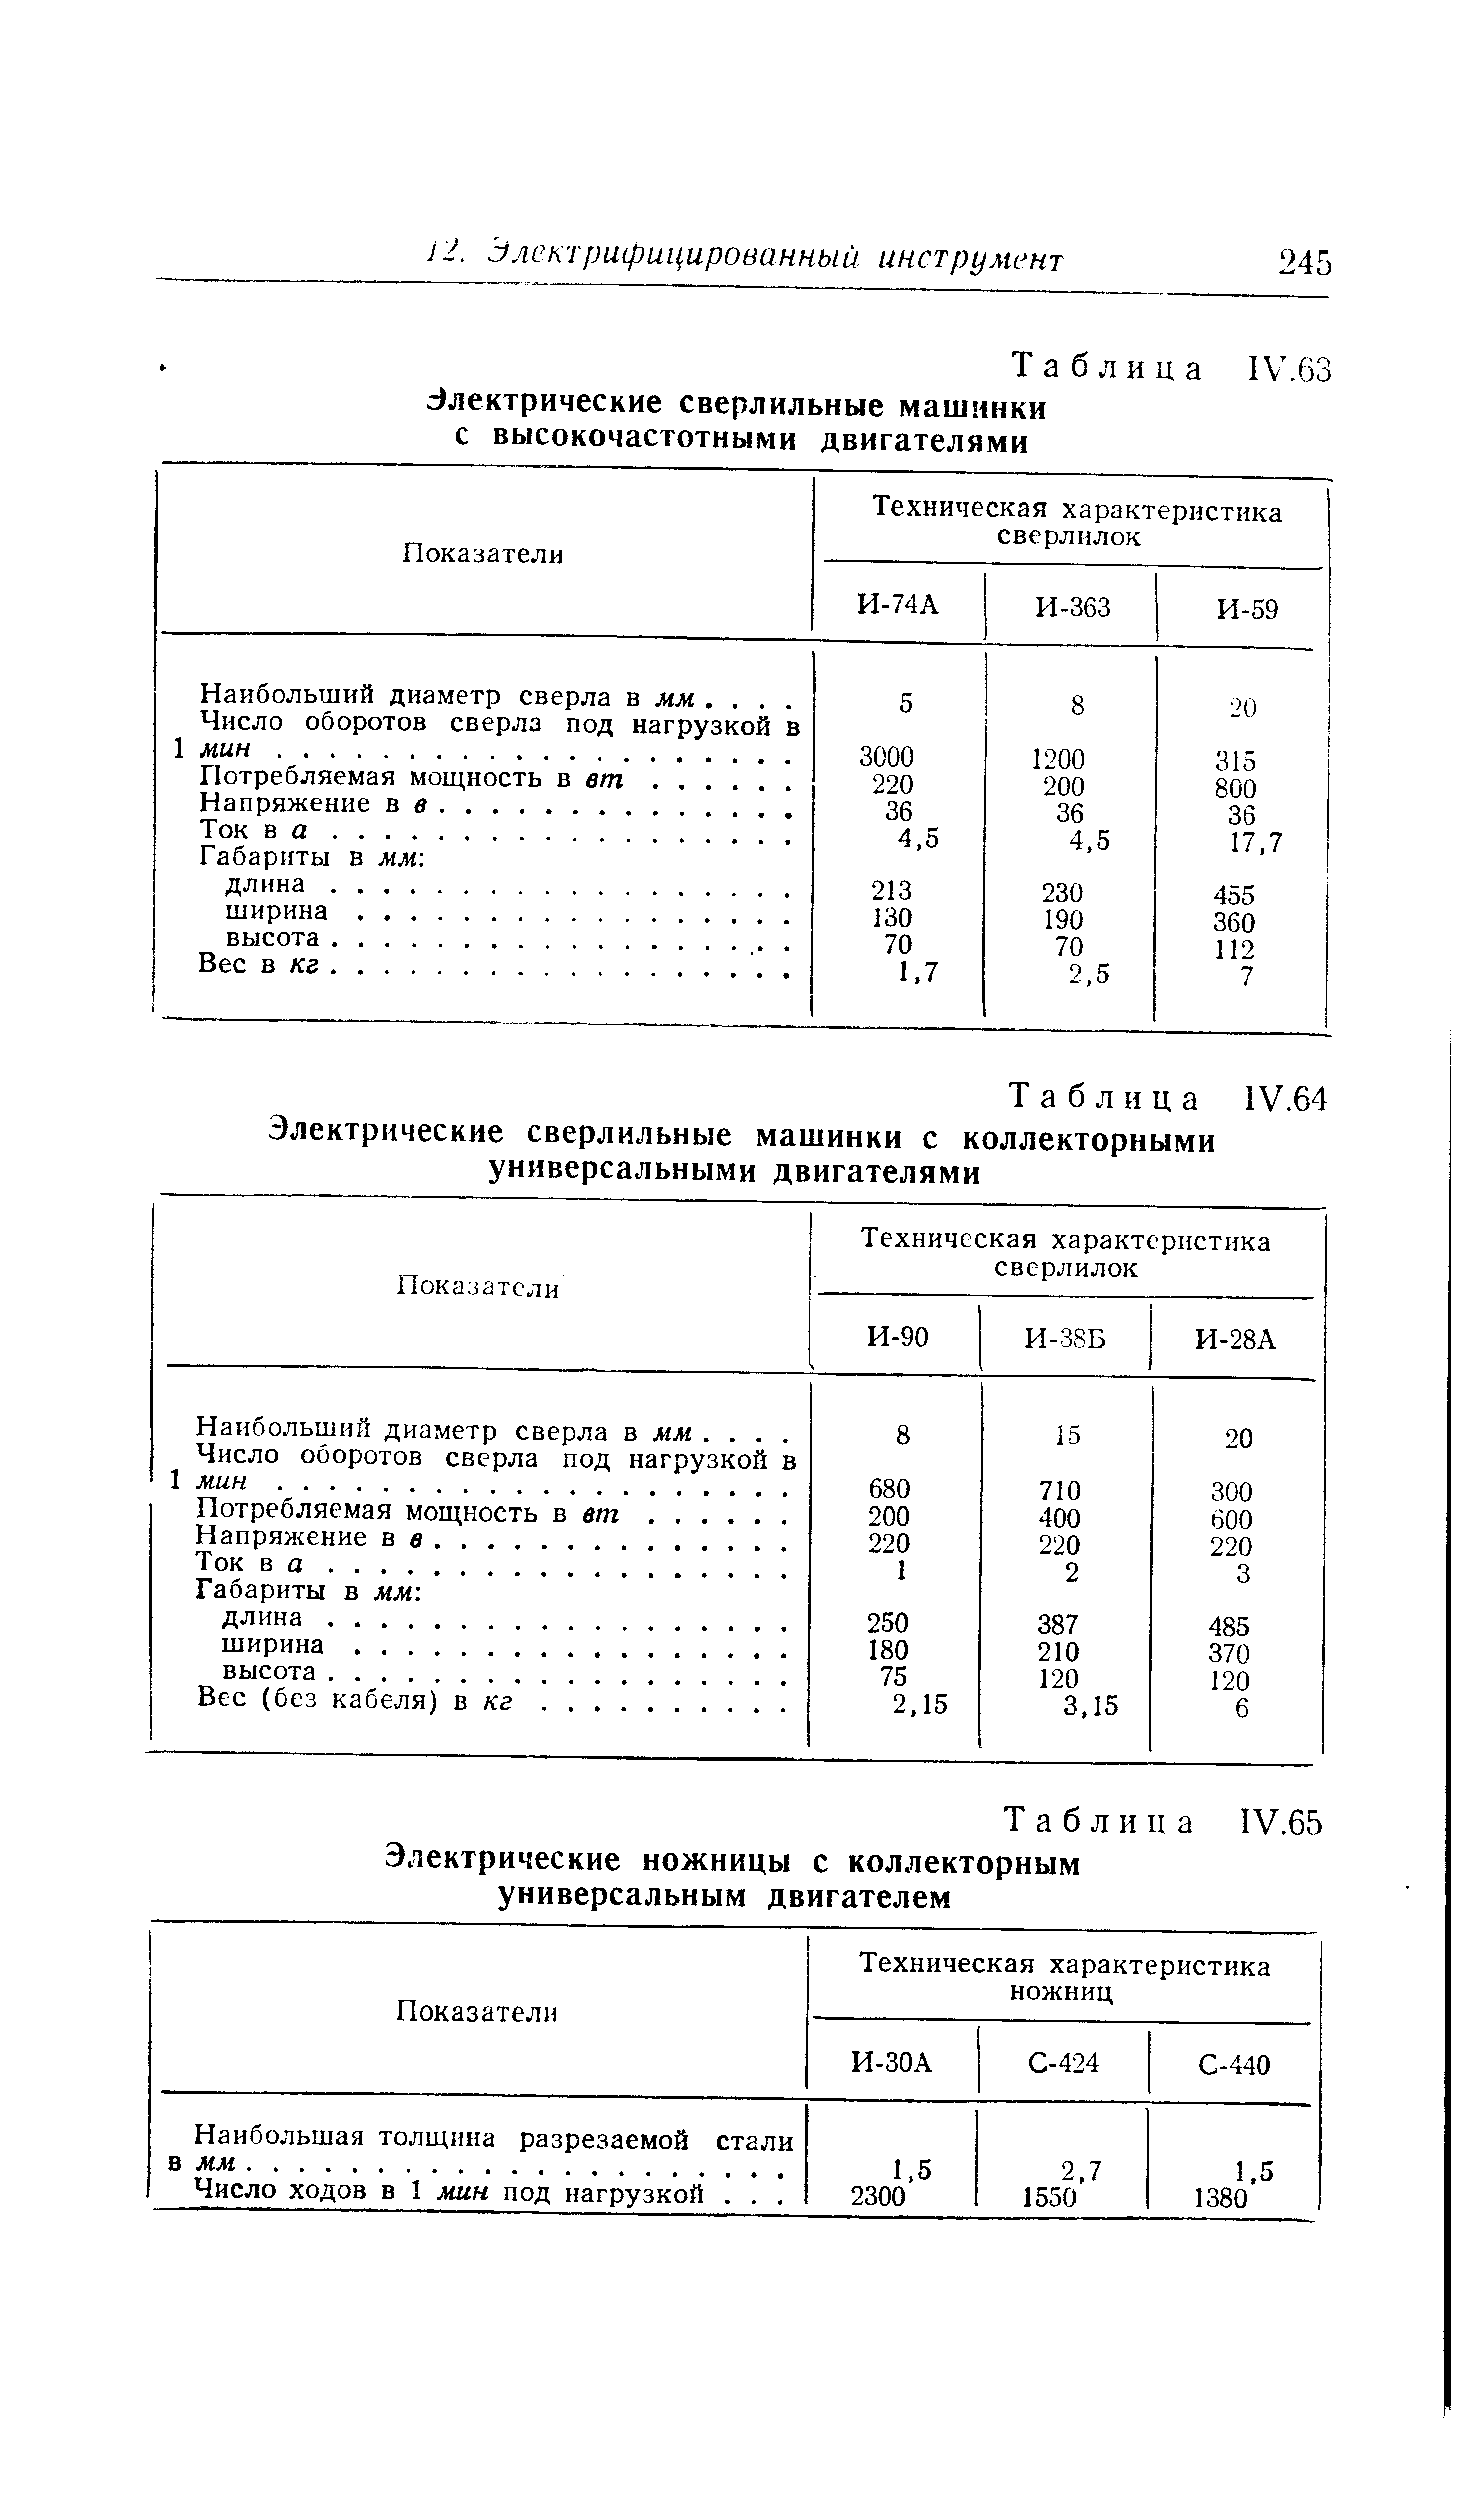 Таблица IV.63 Электрические сверлильные машинки с высокочастотными двигателями
